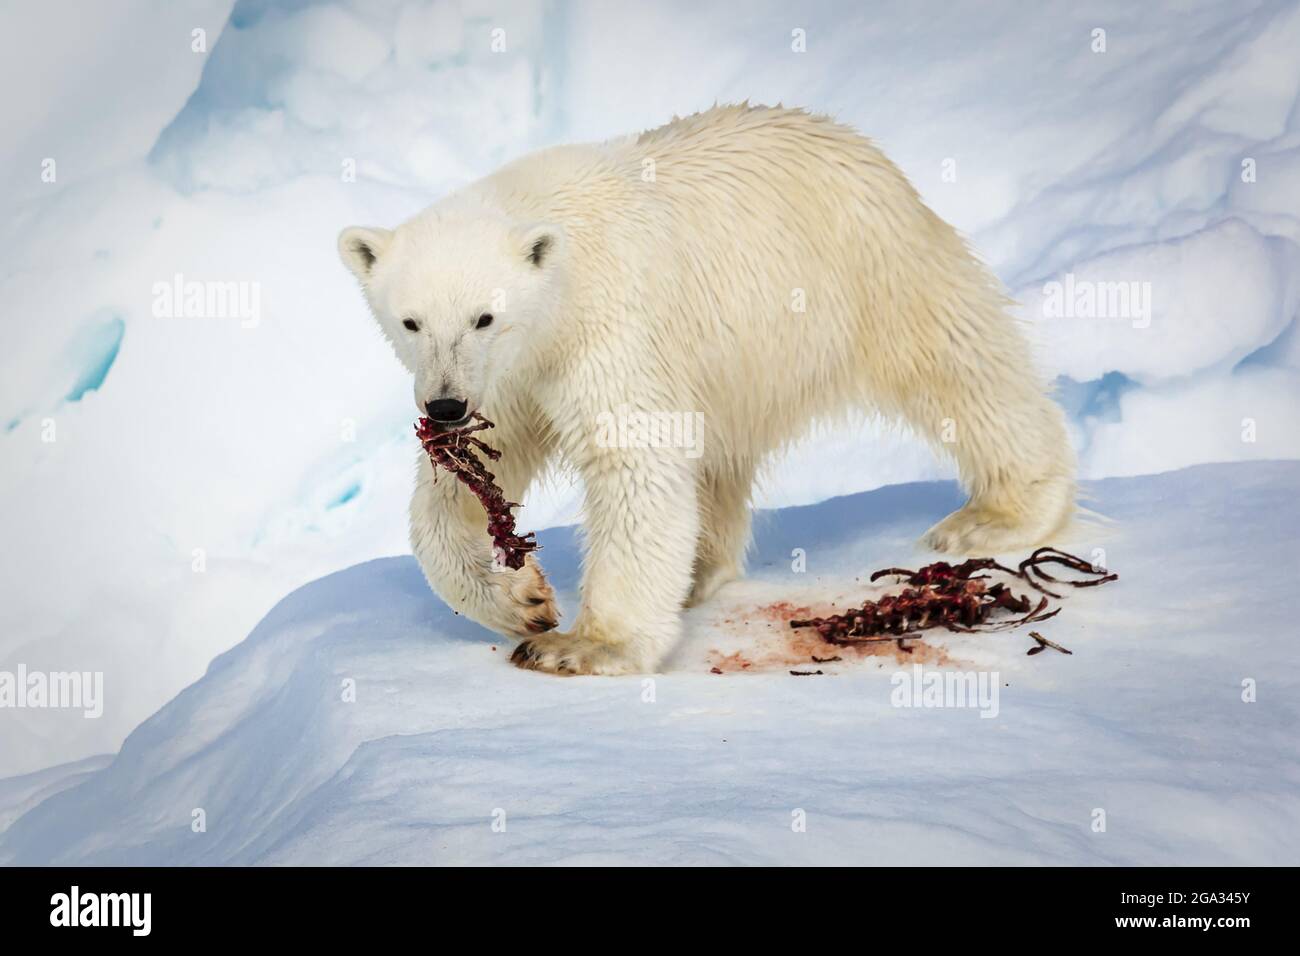 Cucciolo di orso polare (Ursus maritimus) che si nuoce agli scarti; Svalbard, Norvegia Foto Stock